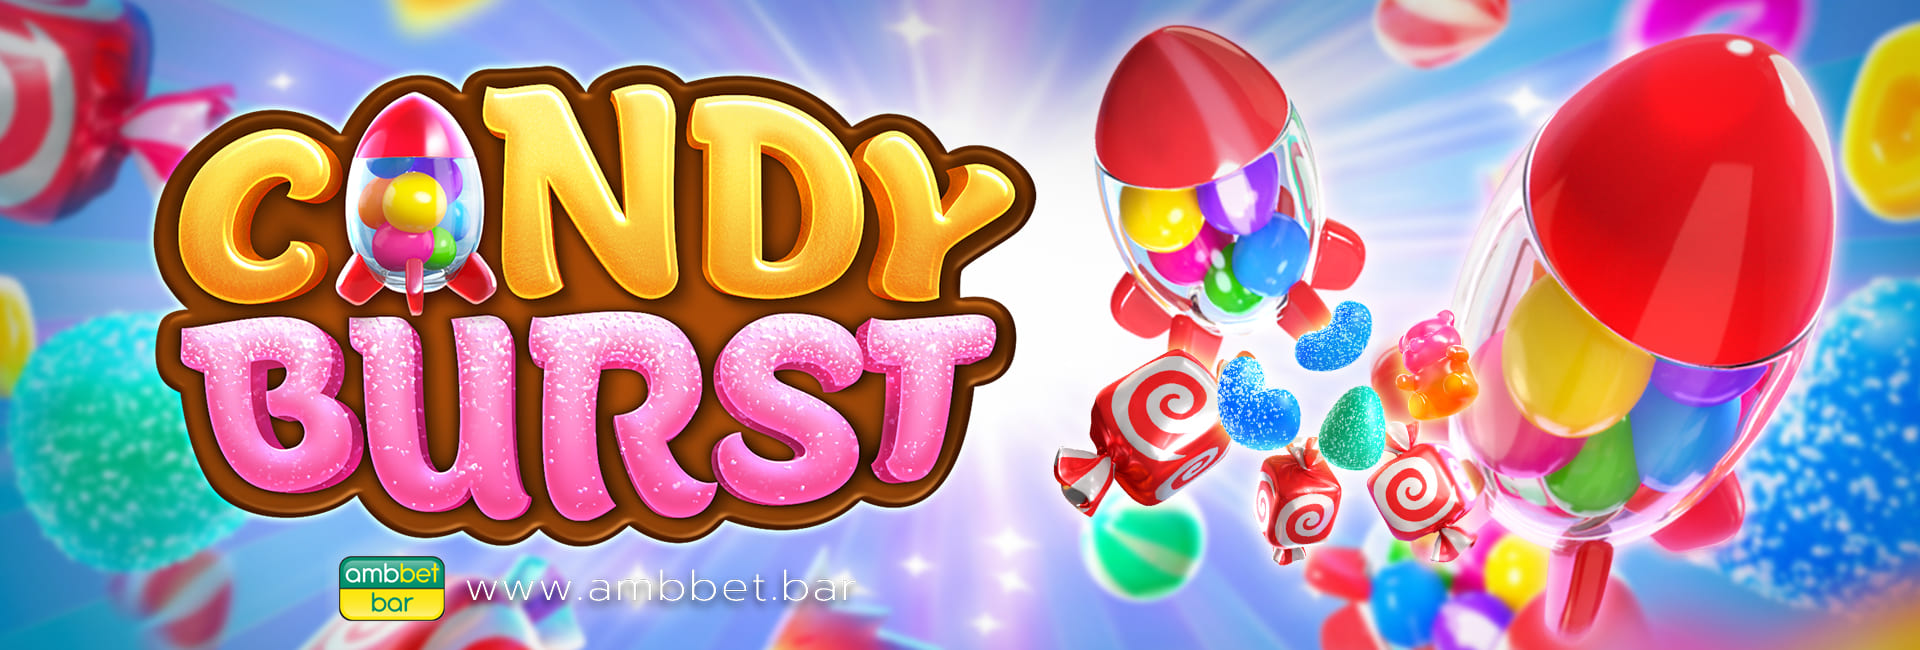 Candy Burst banner